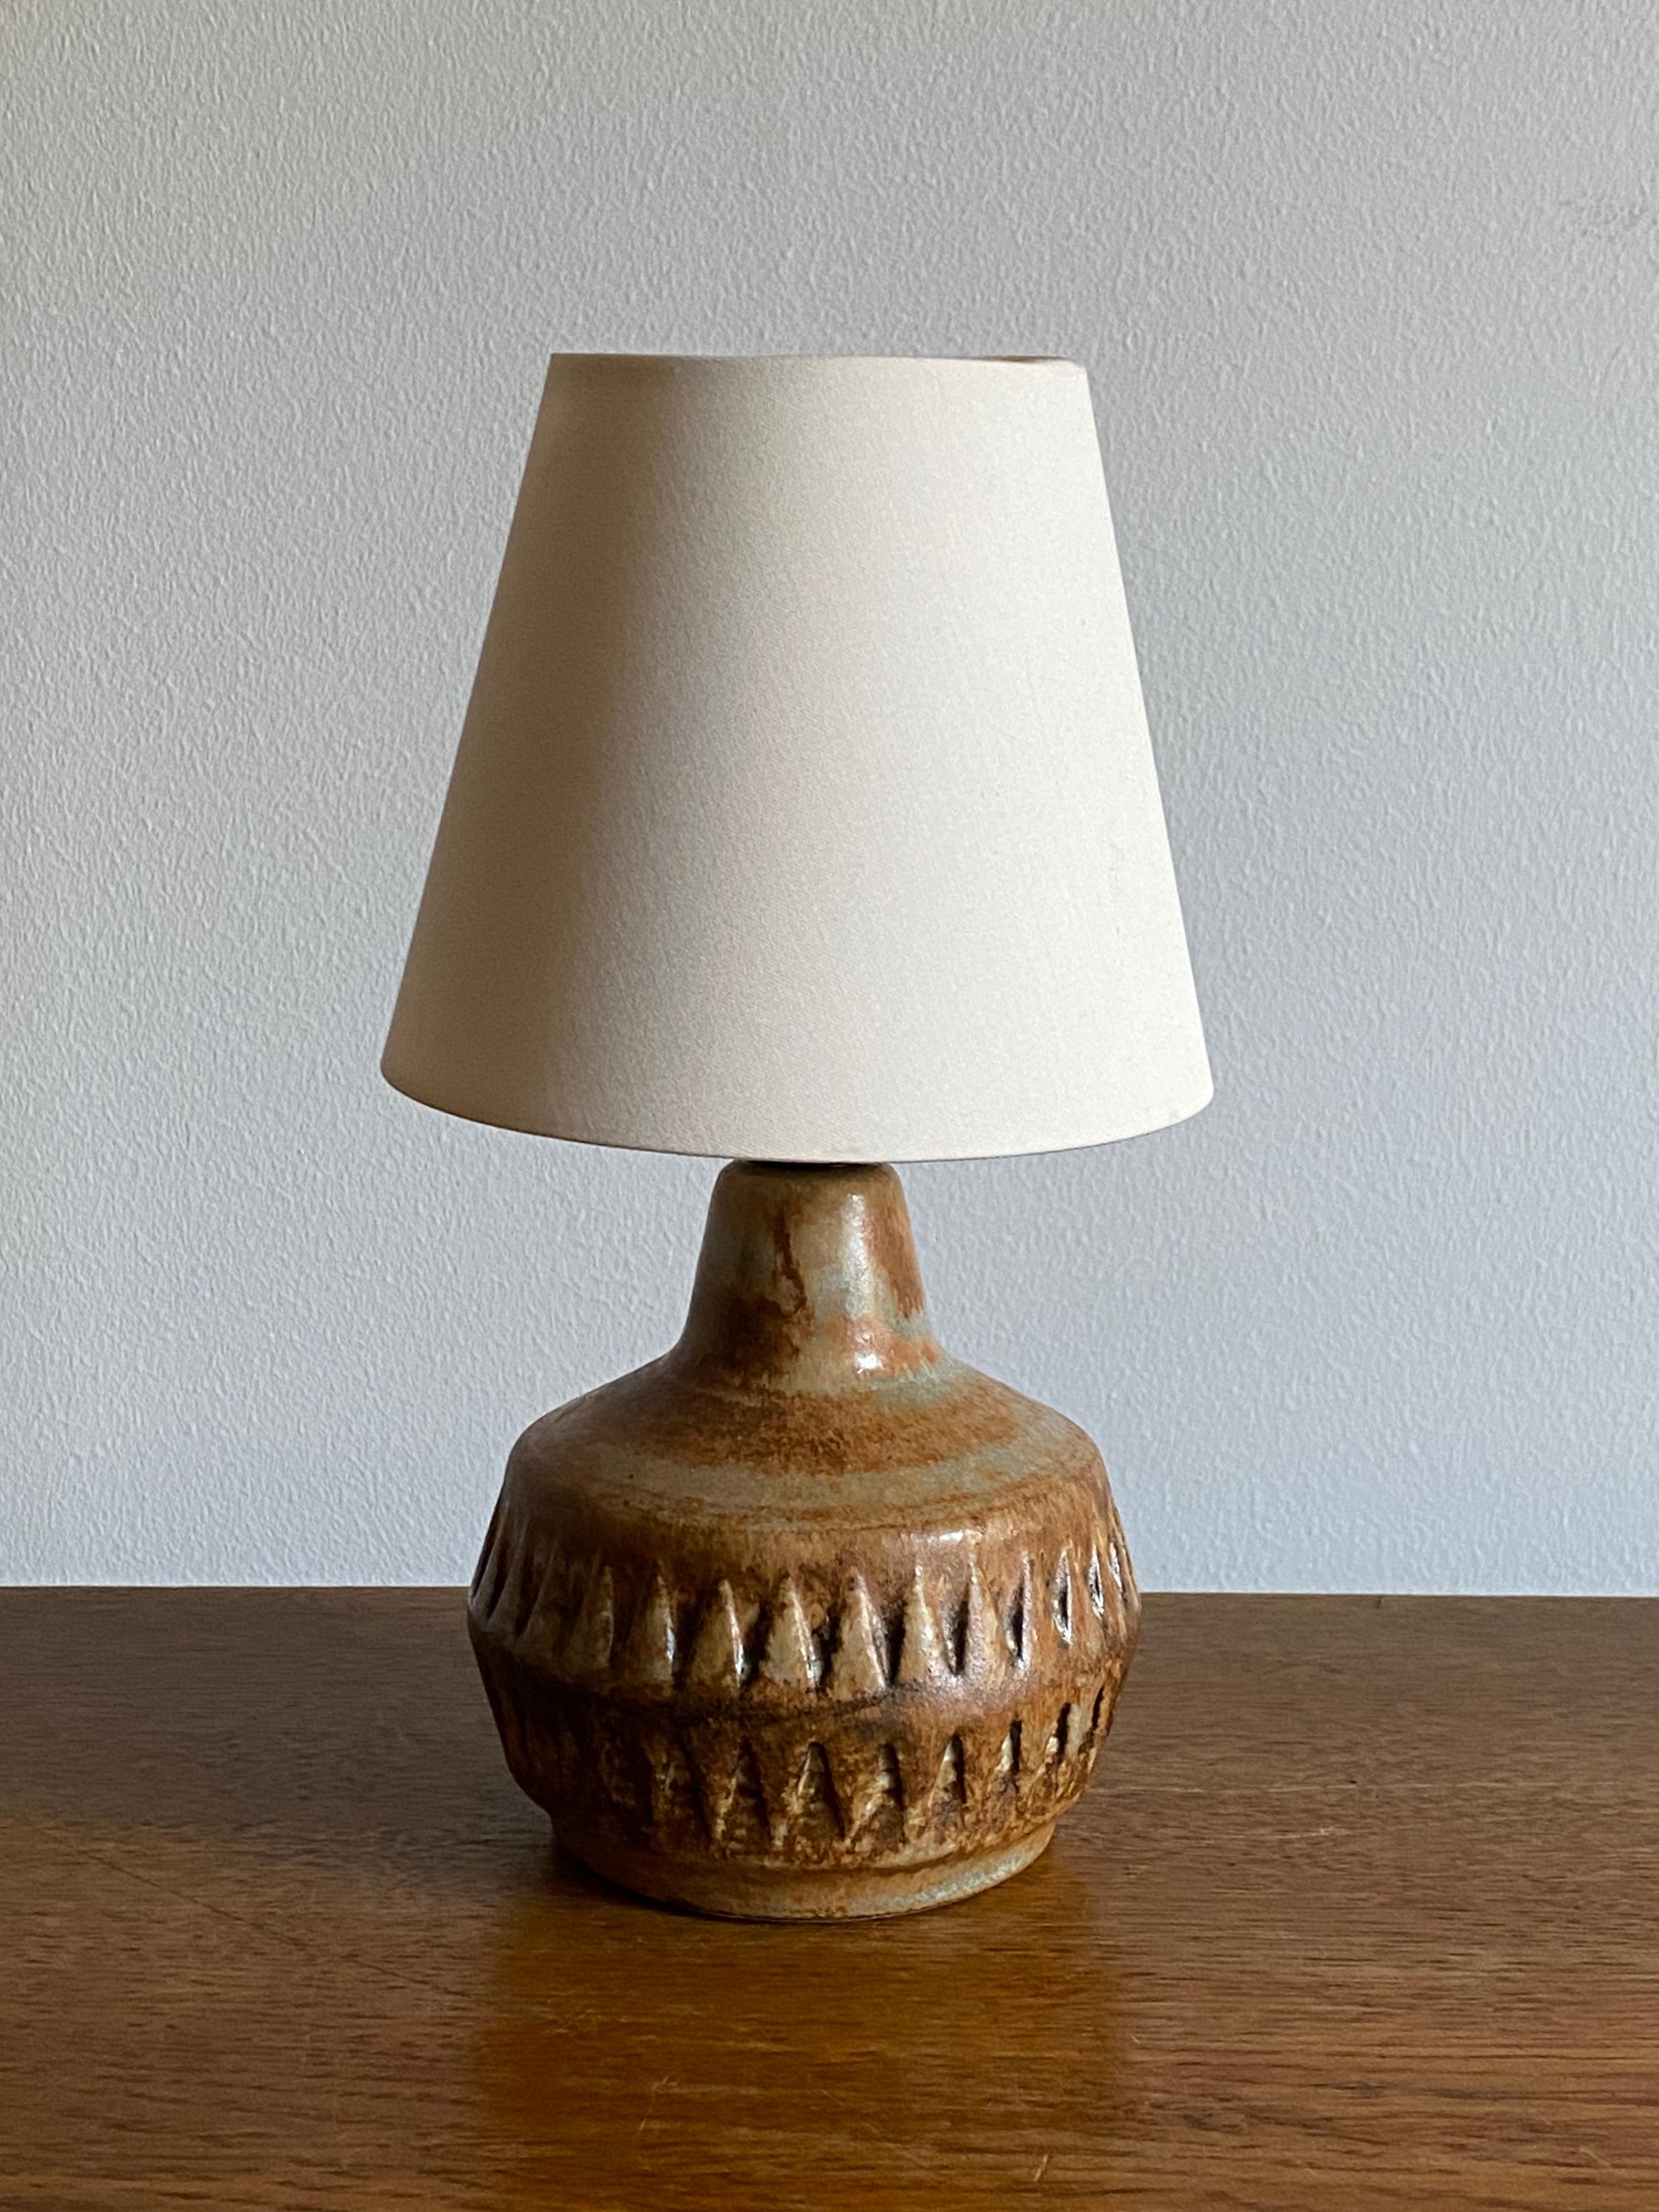 Une lampe de table en grès, exécutée par Bruno Karlsson dans une forme abstraite et une glaçure marron / jaune / beige très artistique. Dans son studio, appelé 